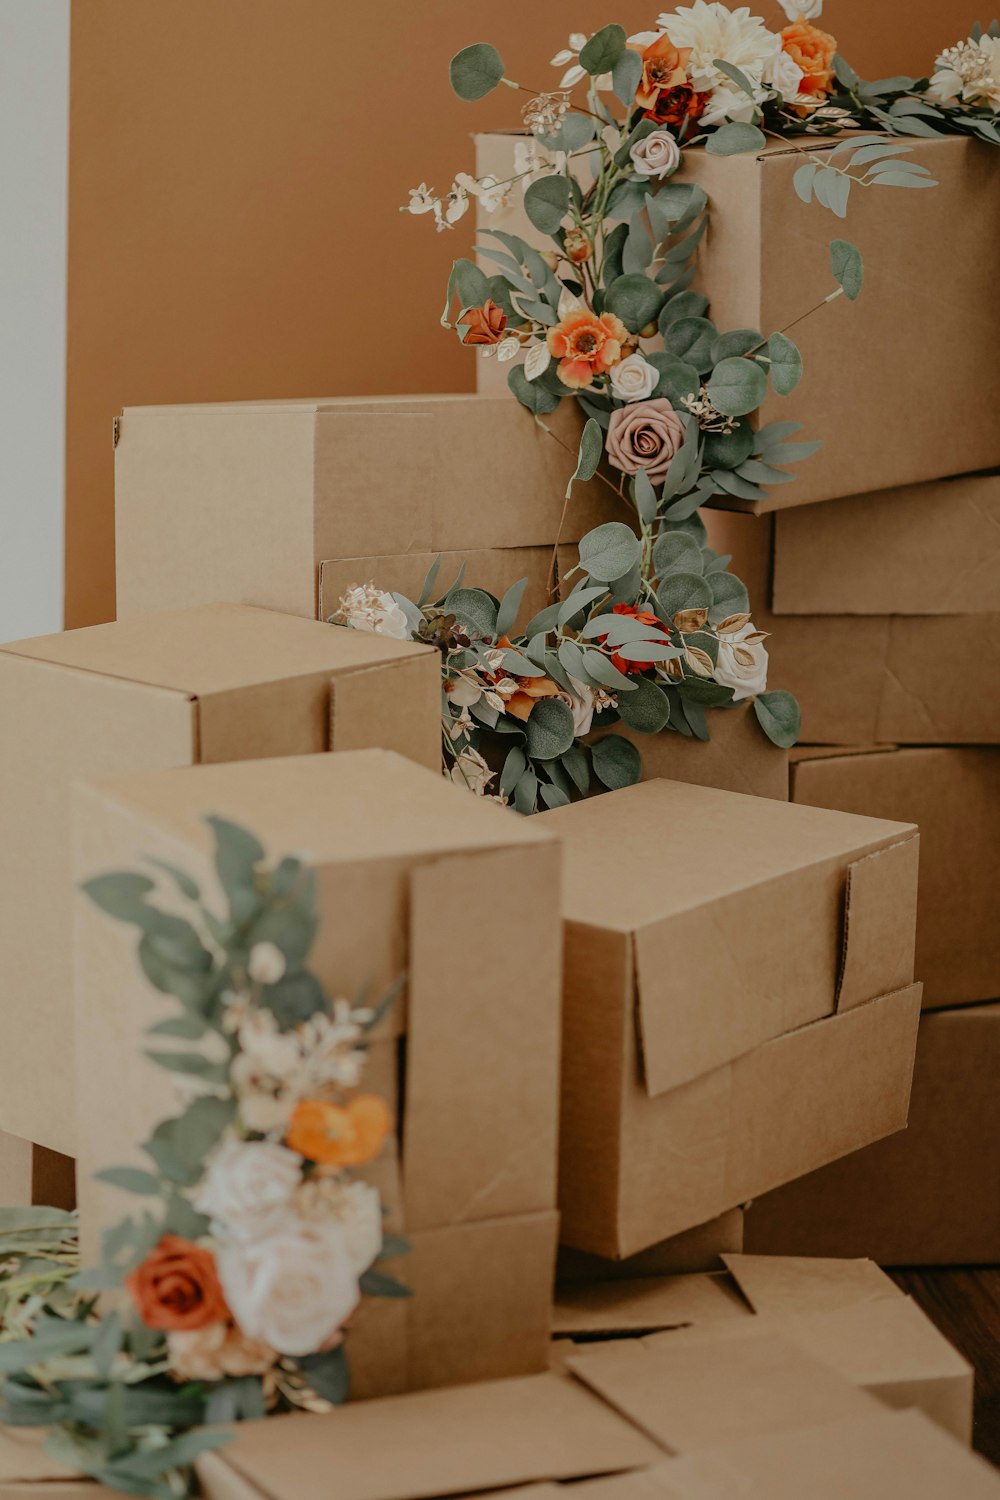 Caja de cartón marrón con flores verdes y rojas